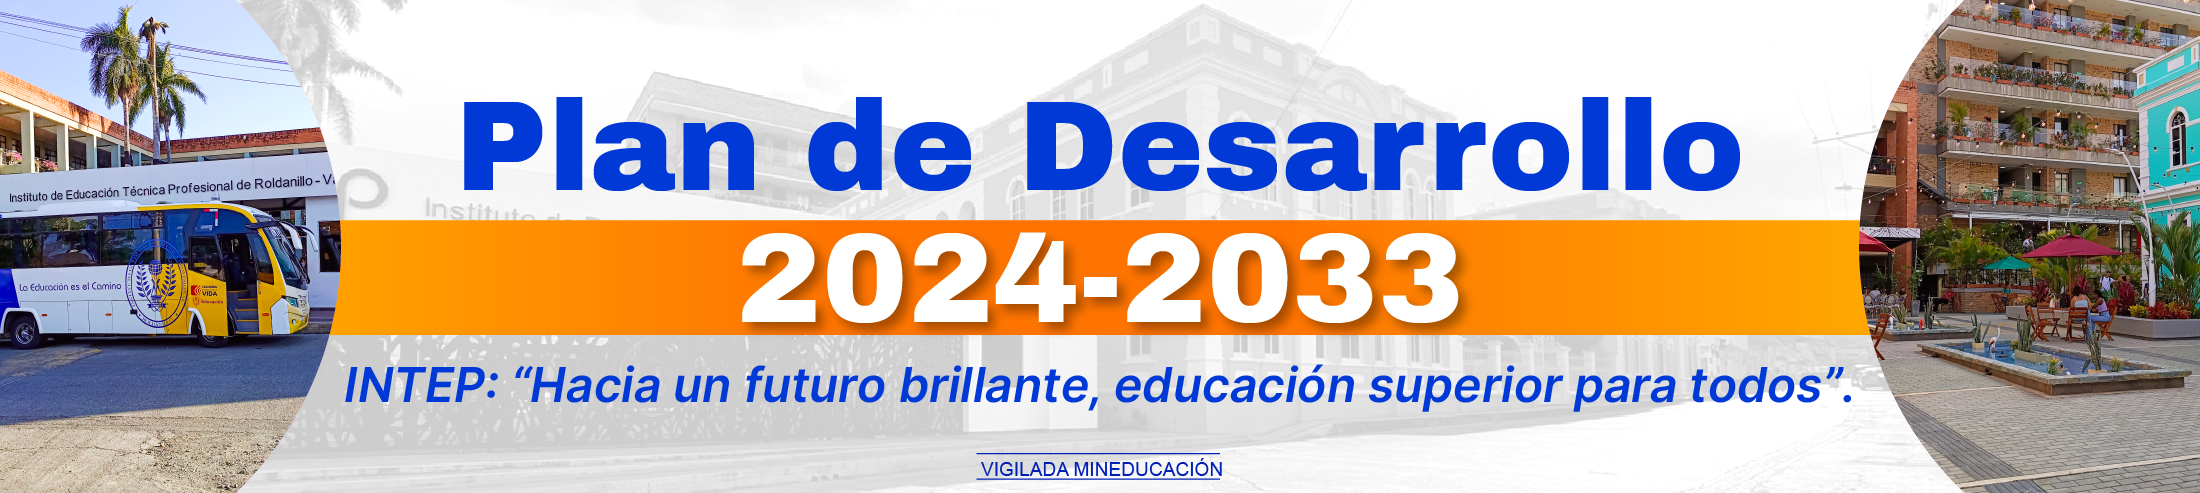 PLAN DE DESARROLLO 2024-2033